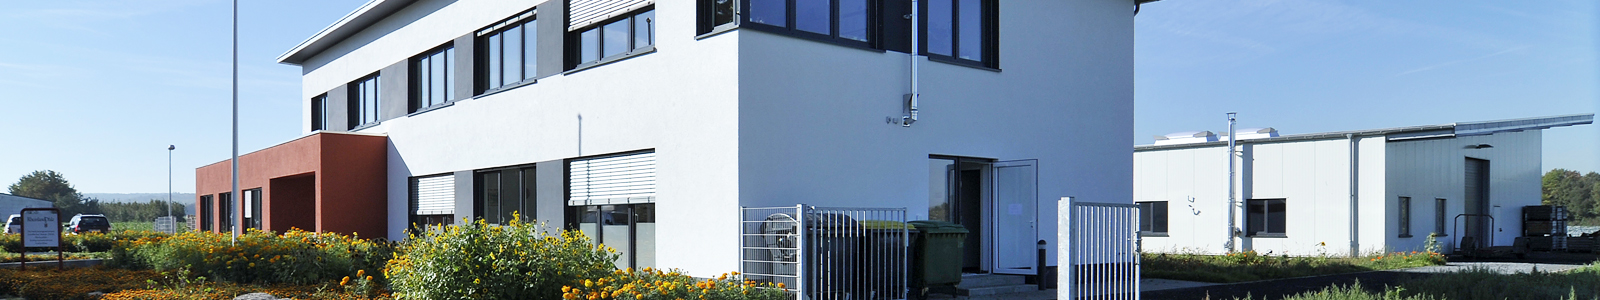 Gebäude an der Dienststelle in Klein-Altendorf @Feuerbach